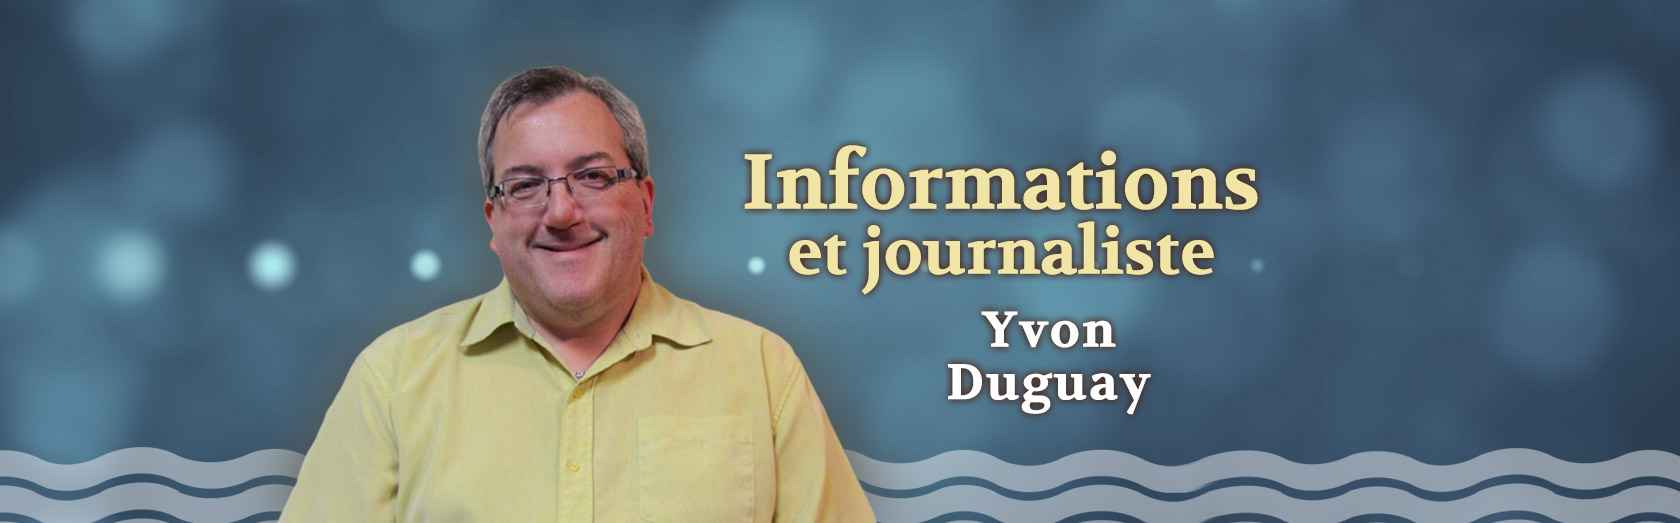 Information et journaliste Yvon Duguay